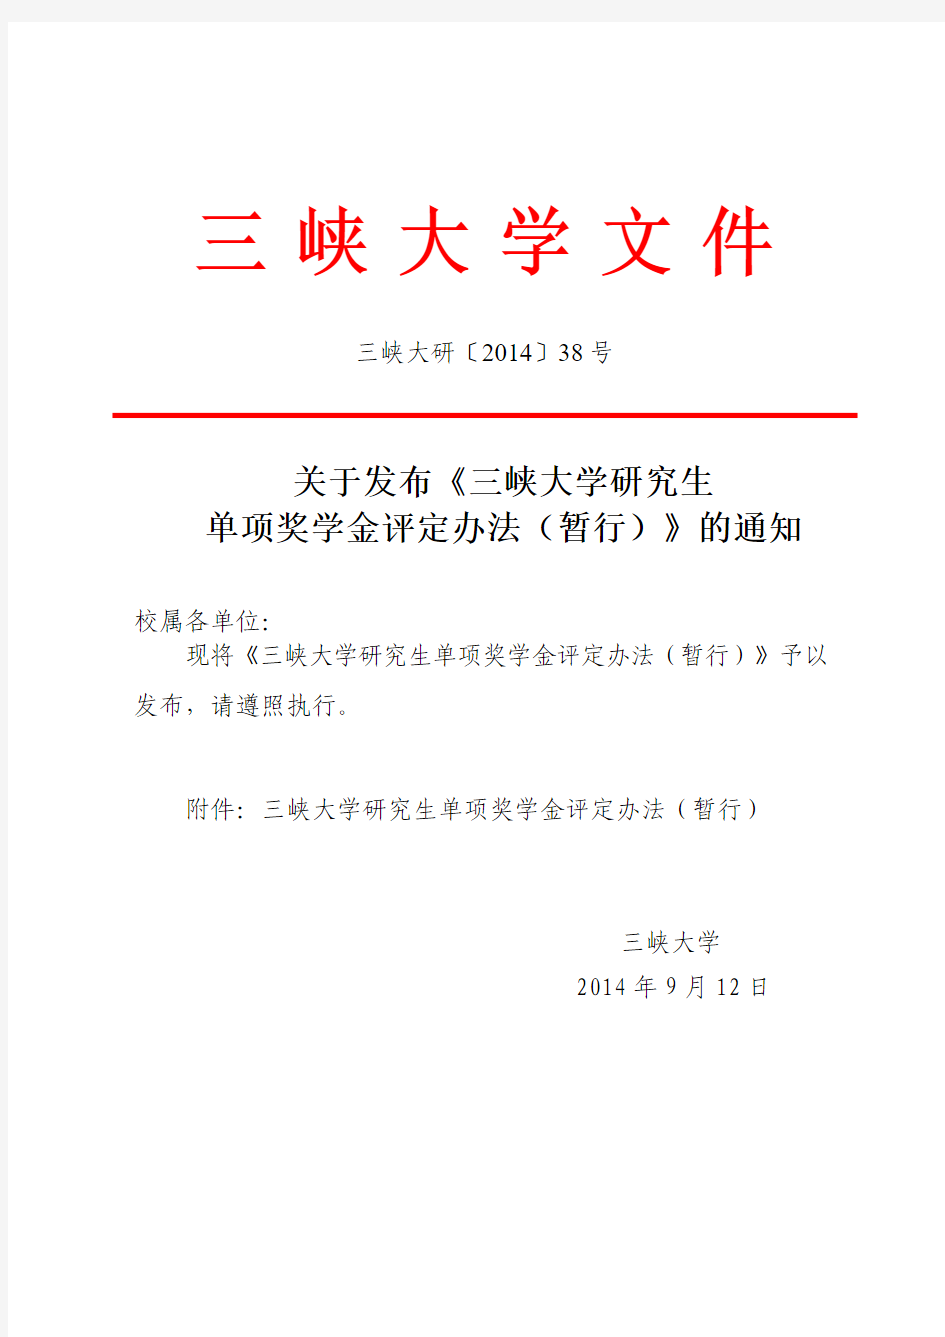 三峡大学研究生单项奖学金评定办法(暂行)